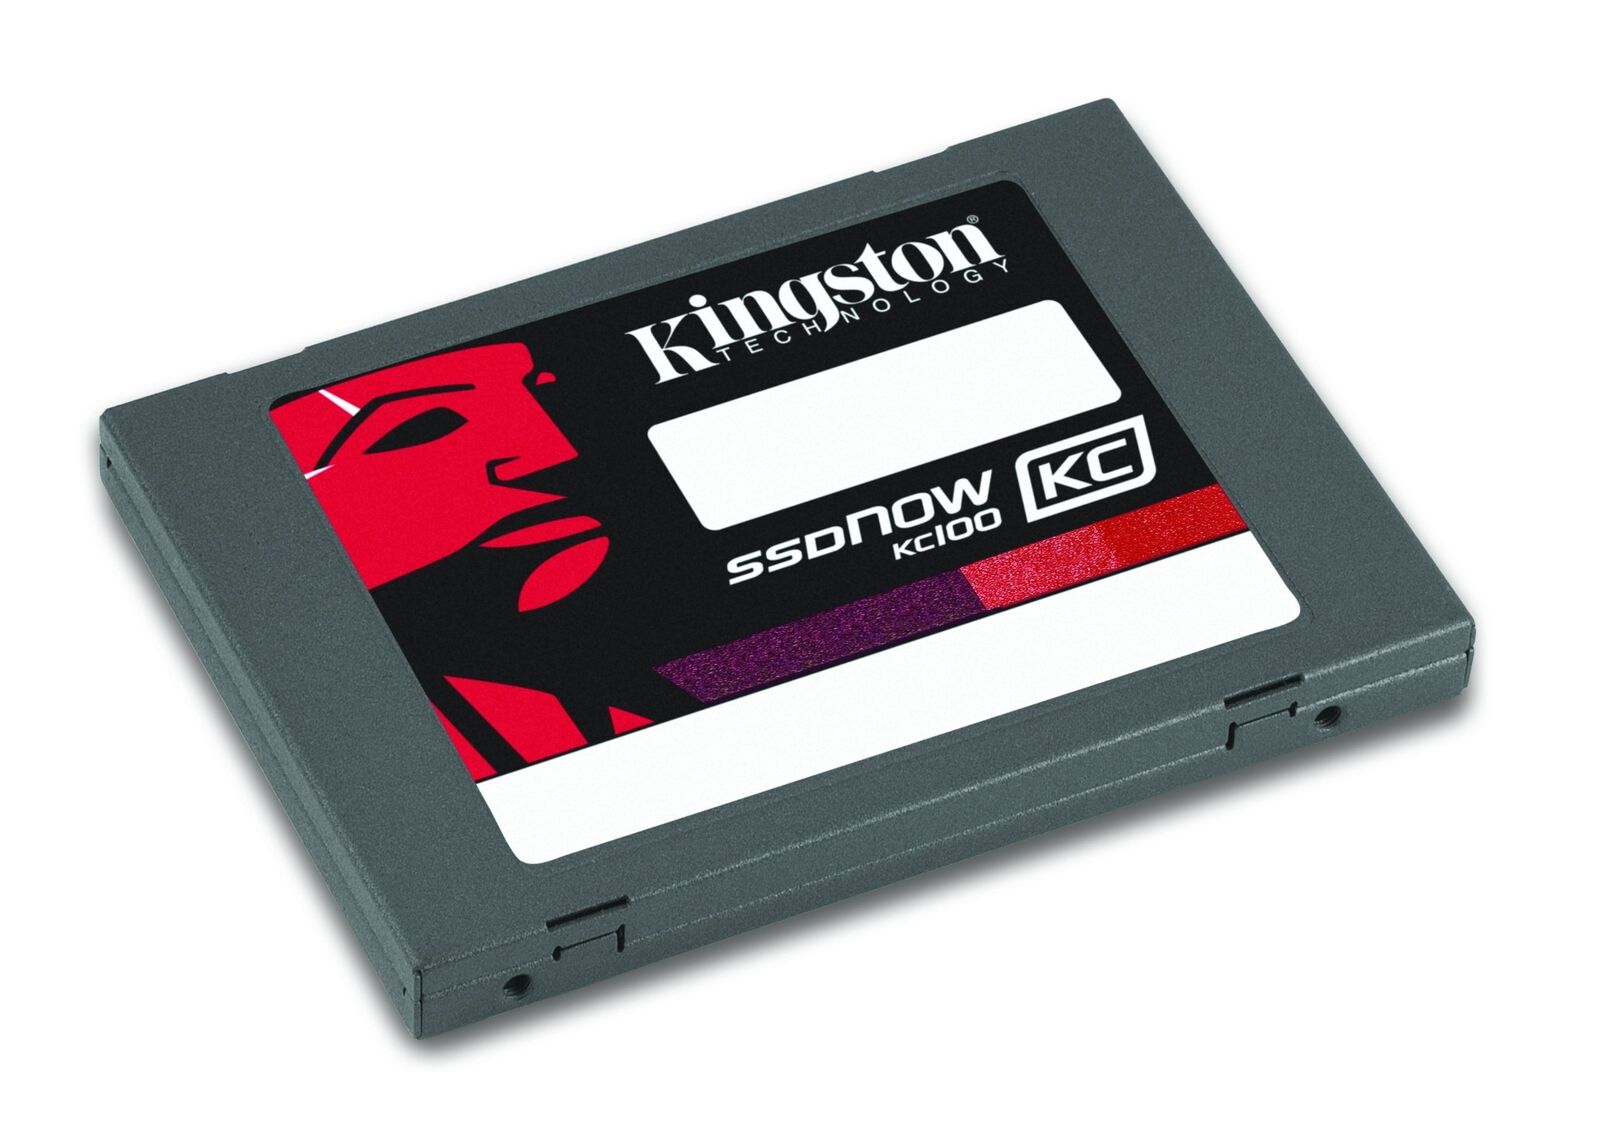 Kingston Digital 240 GB SSDNow KC100 SSD SATA 3 2.5-Inch Solid-State Drive